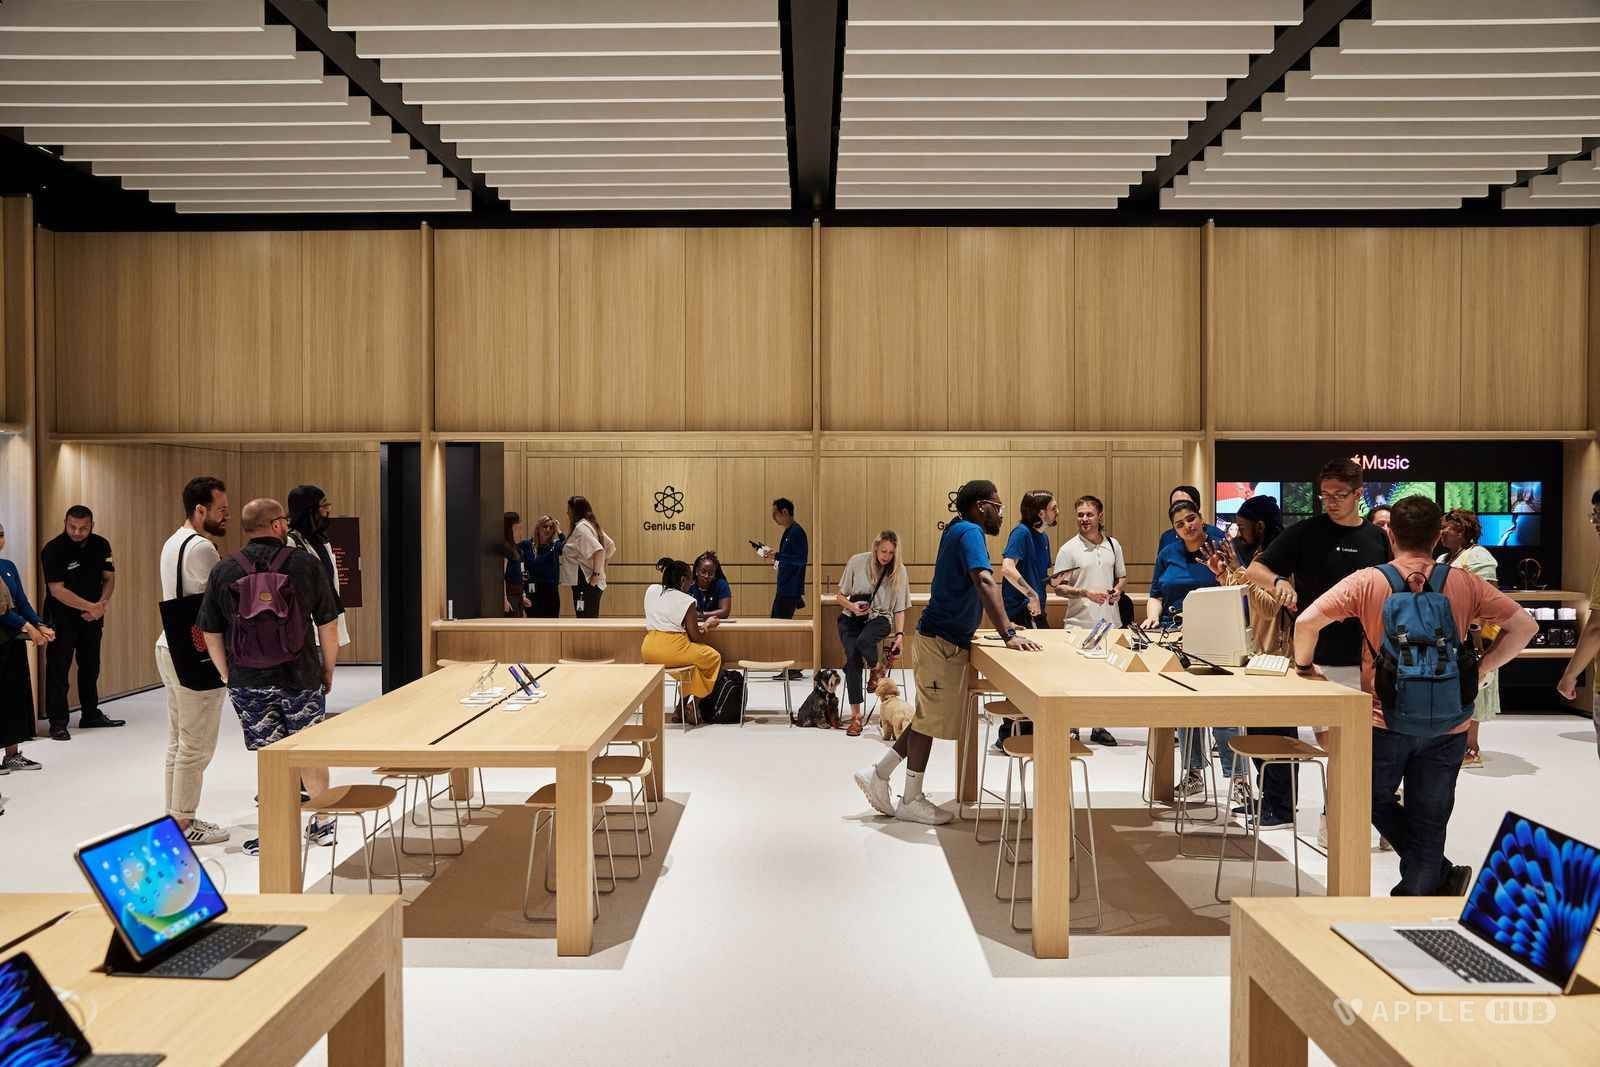 苹果今天在伦敦西南部的巴特西开了一家新店 英国第40家-Applehub-心动论坛